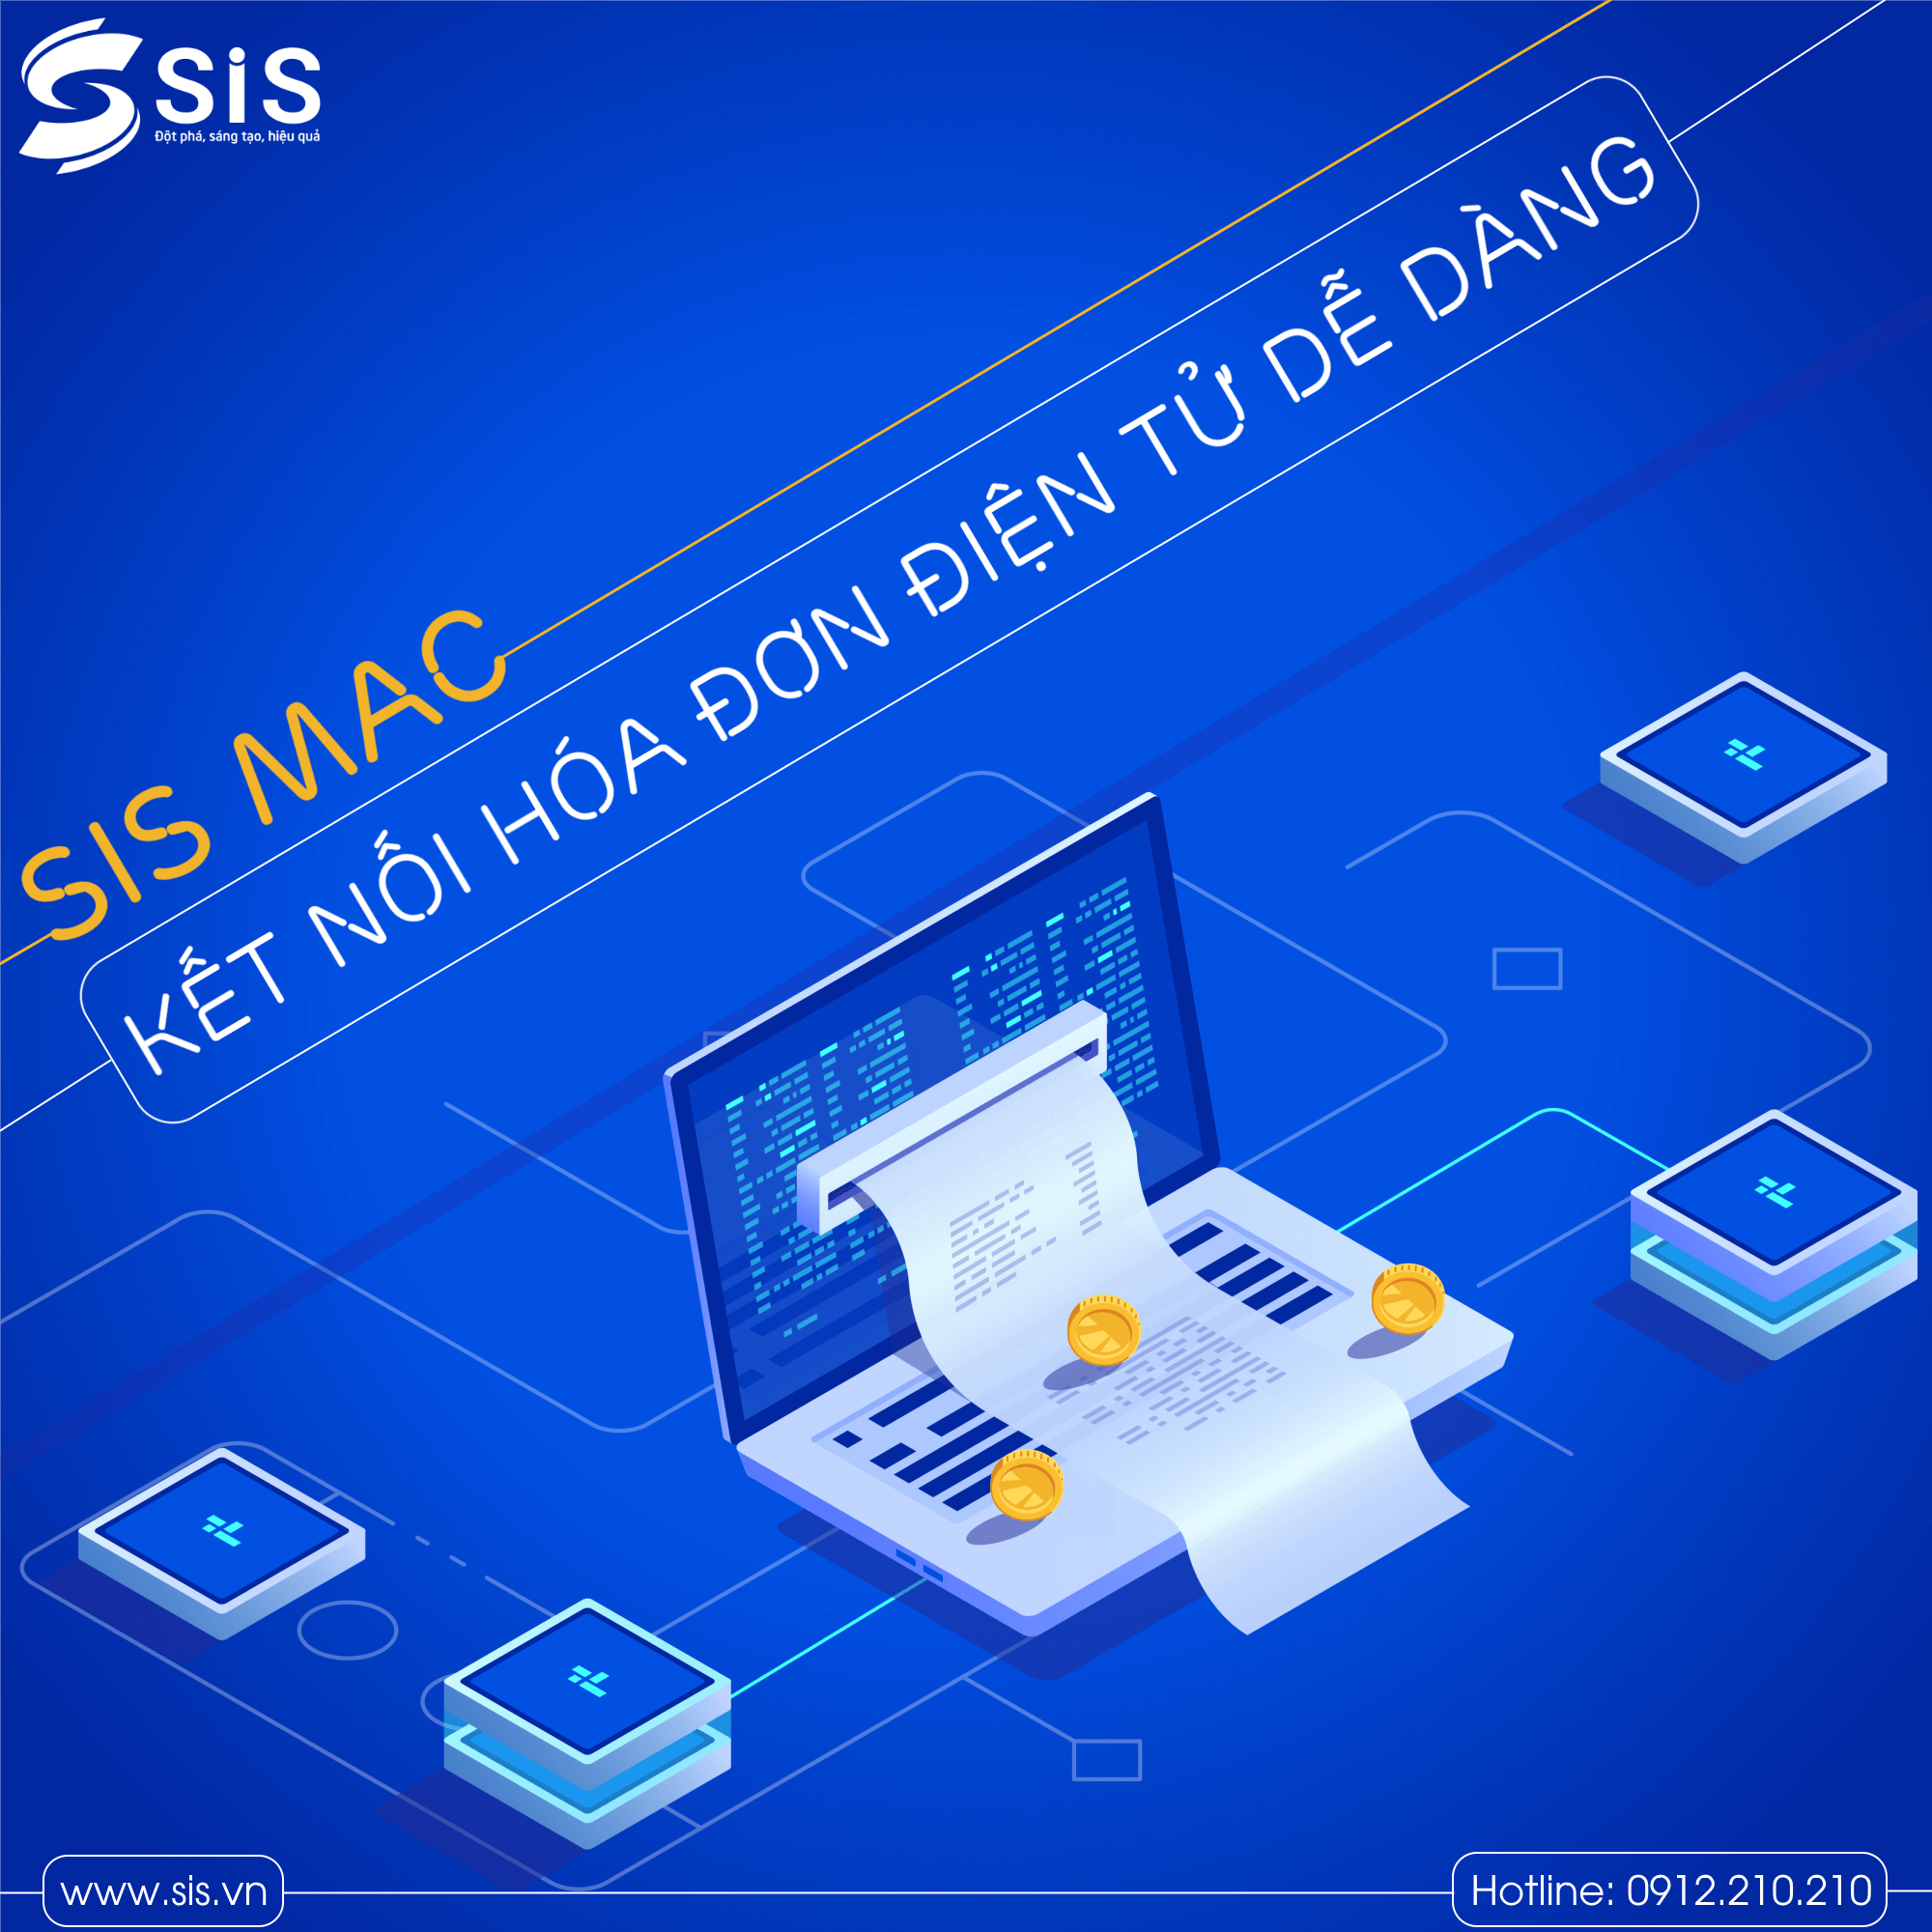 Phần mềm Kế toán SIS MAC tích hợp 2 chiều hóa đơn điện tử của hầu hết các nhà cung cấp trên thị trường.